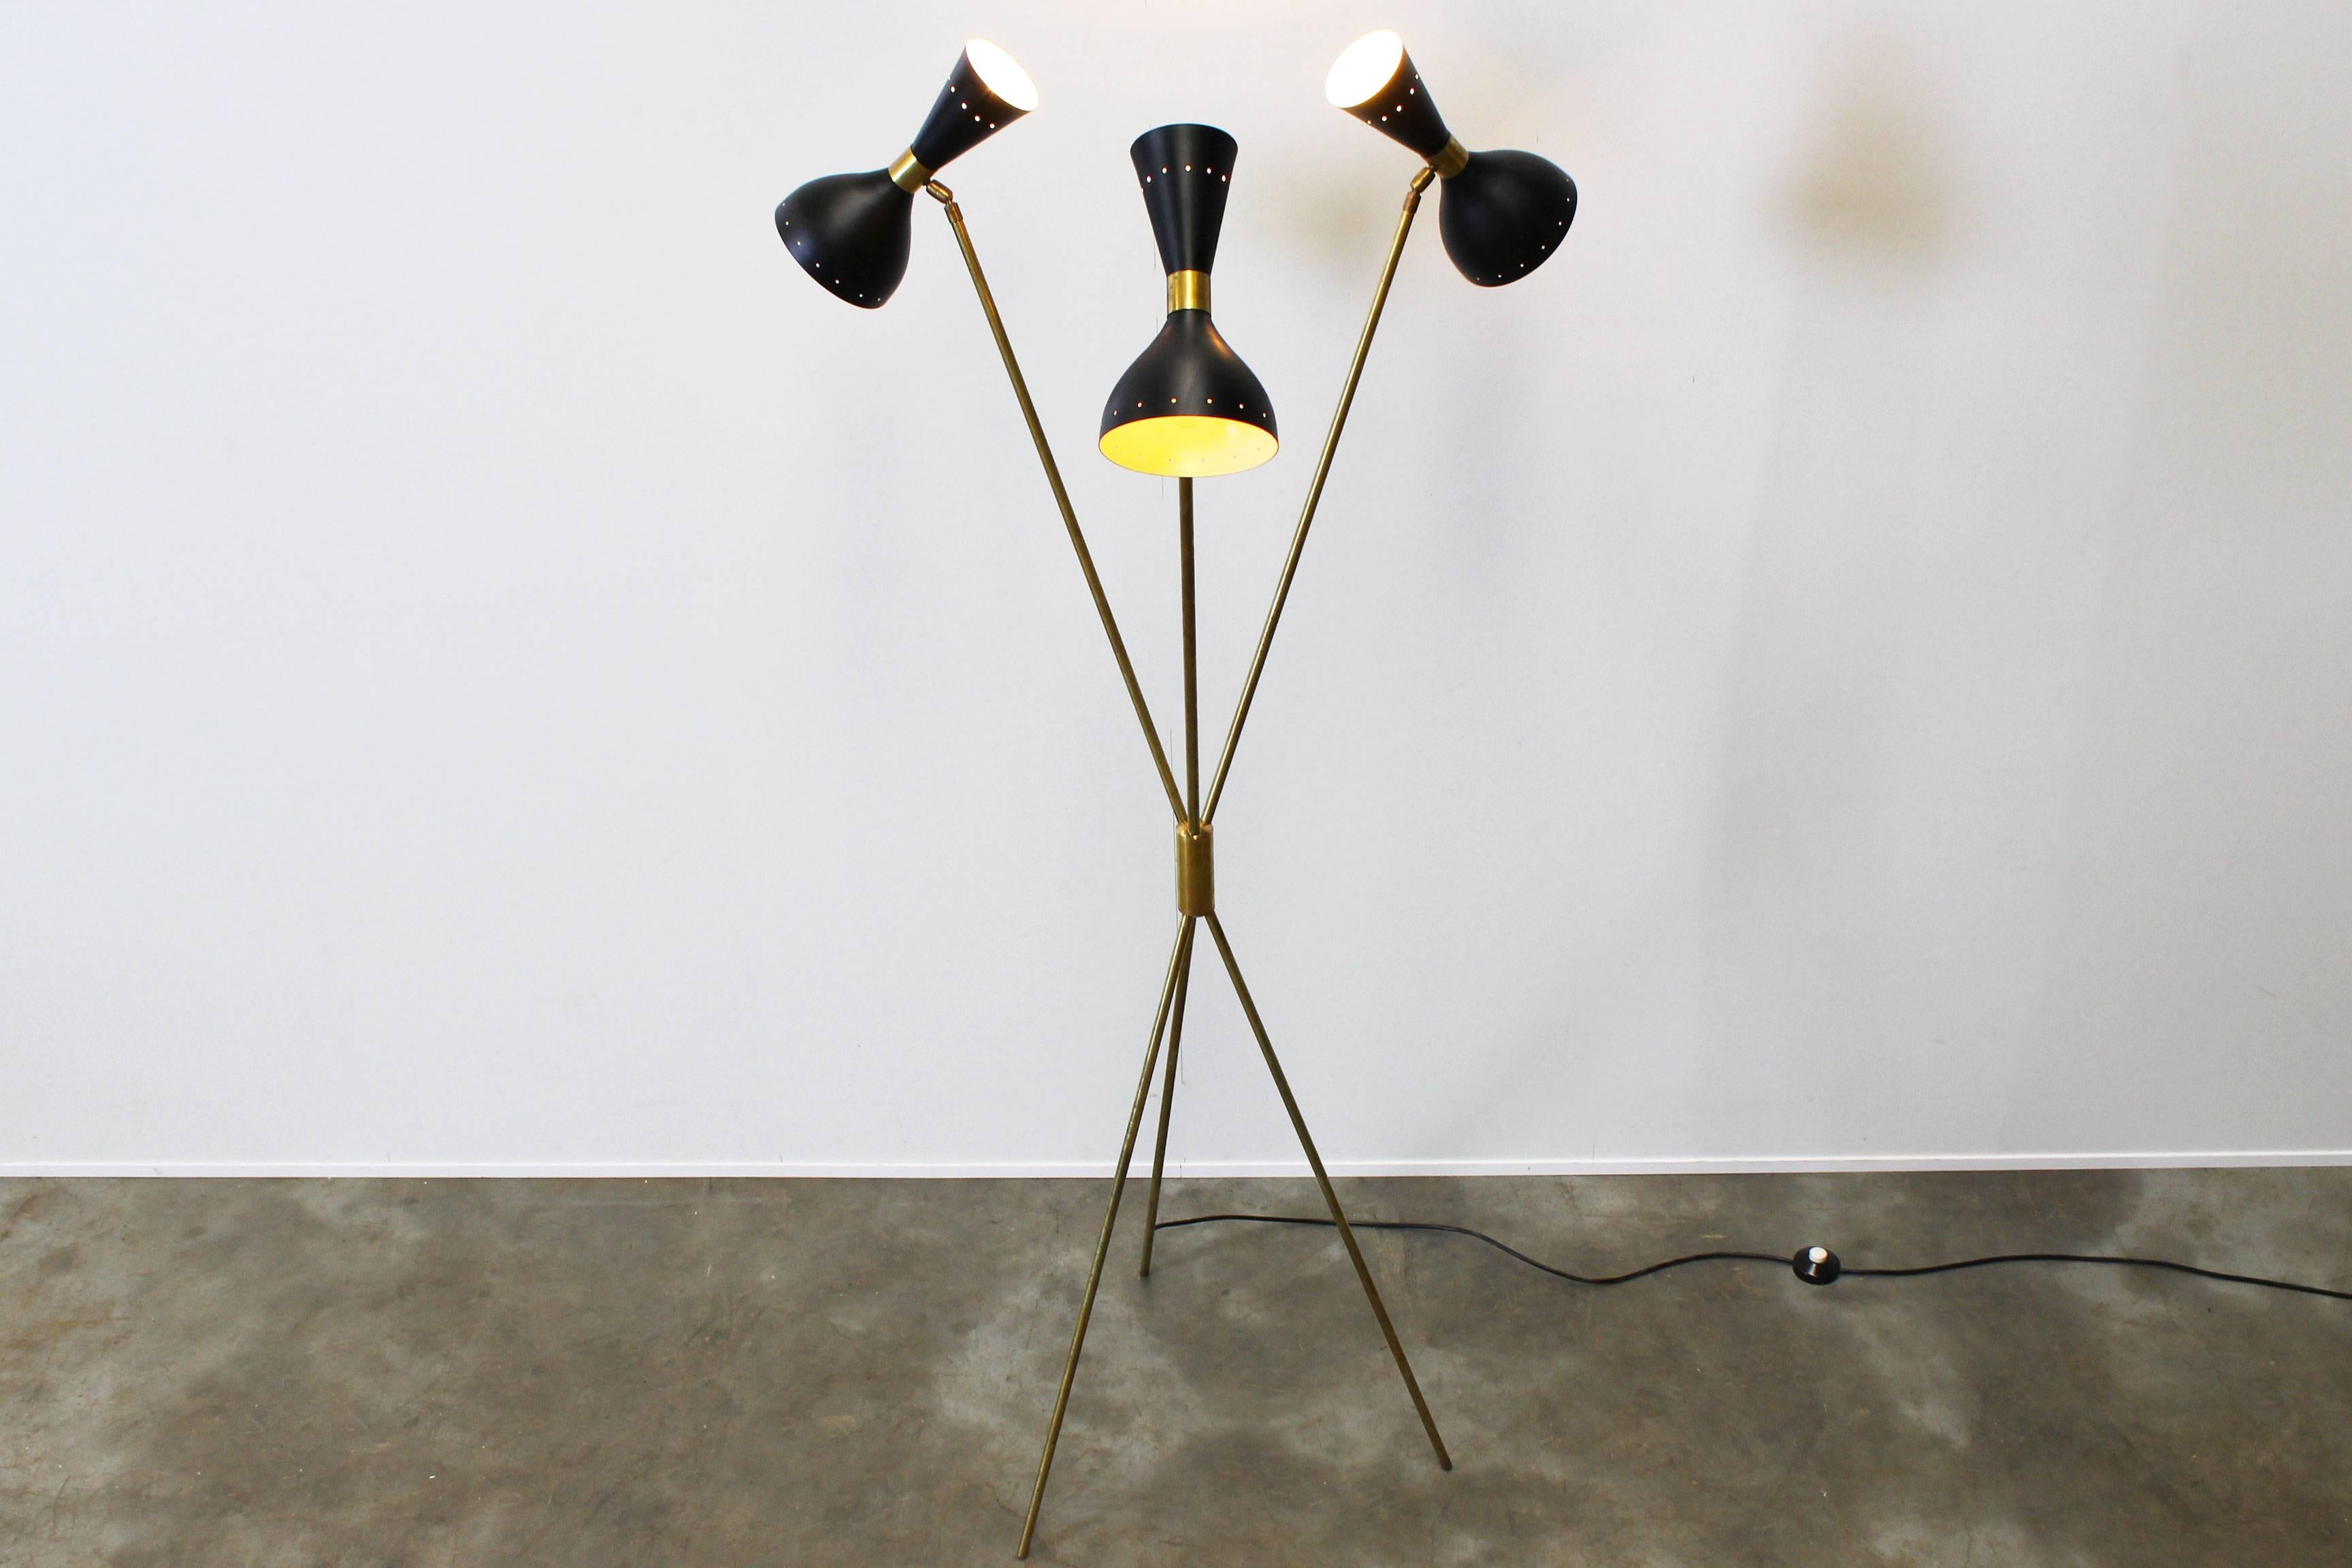 Midcentury Design Italian Minimalist Floor Lamp Style 1950s Stilnovo Brass Black 3